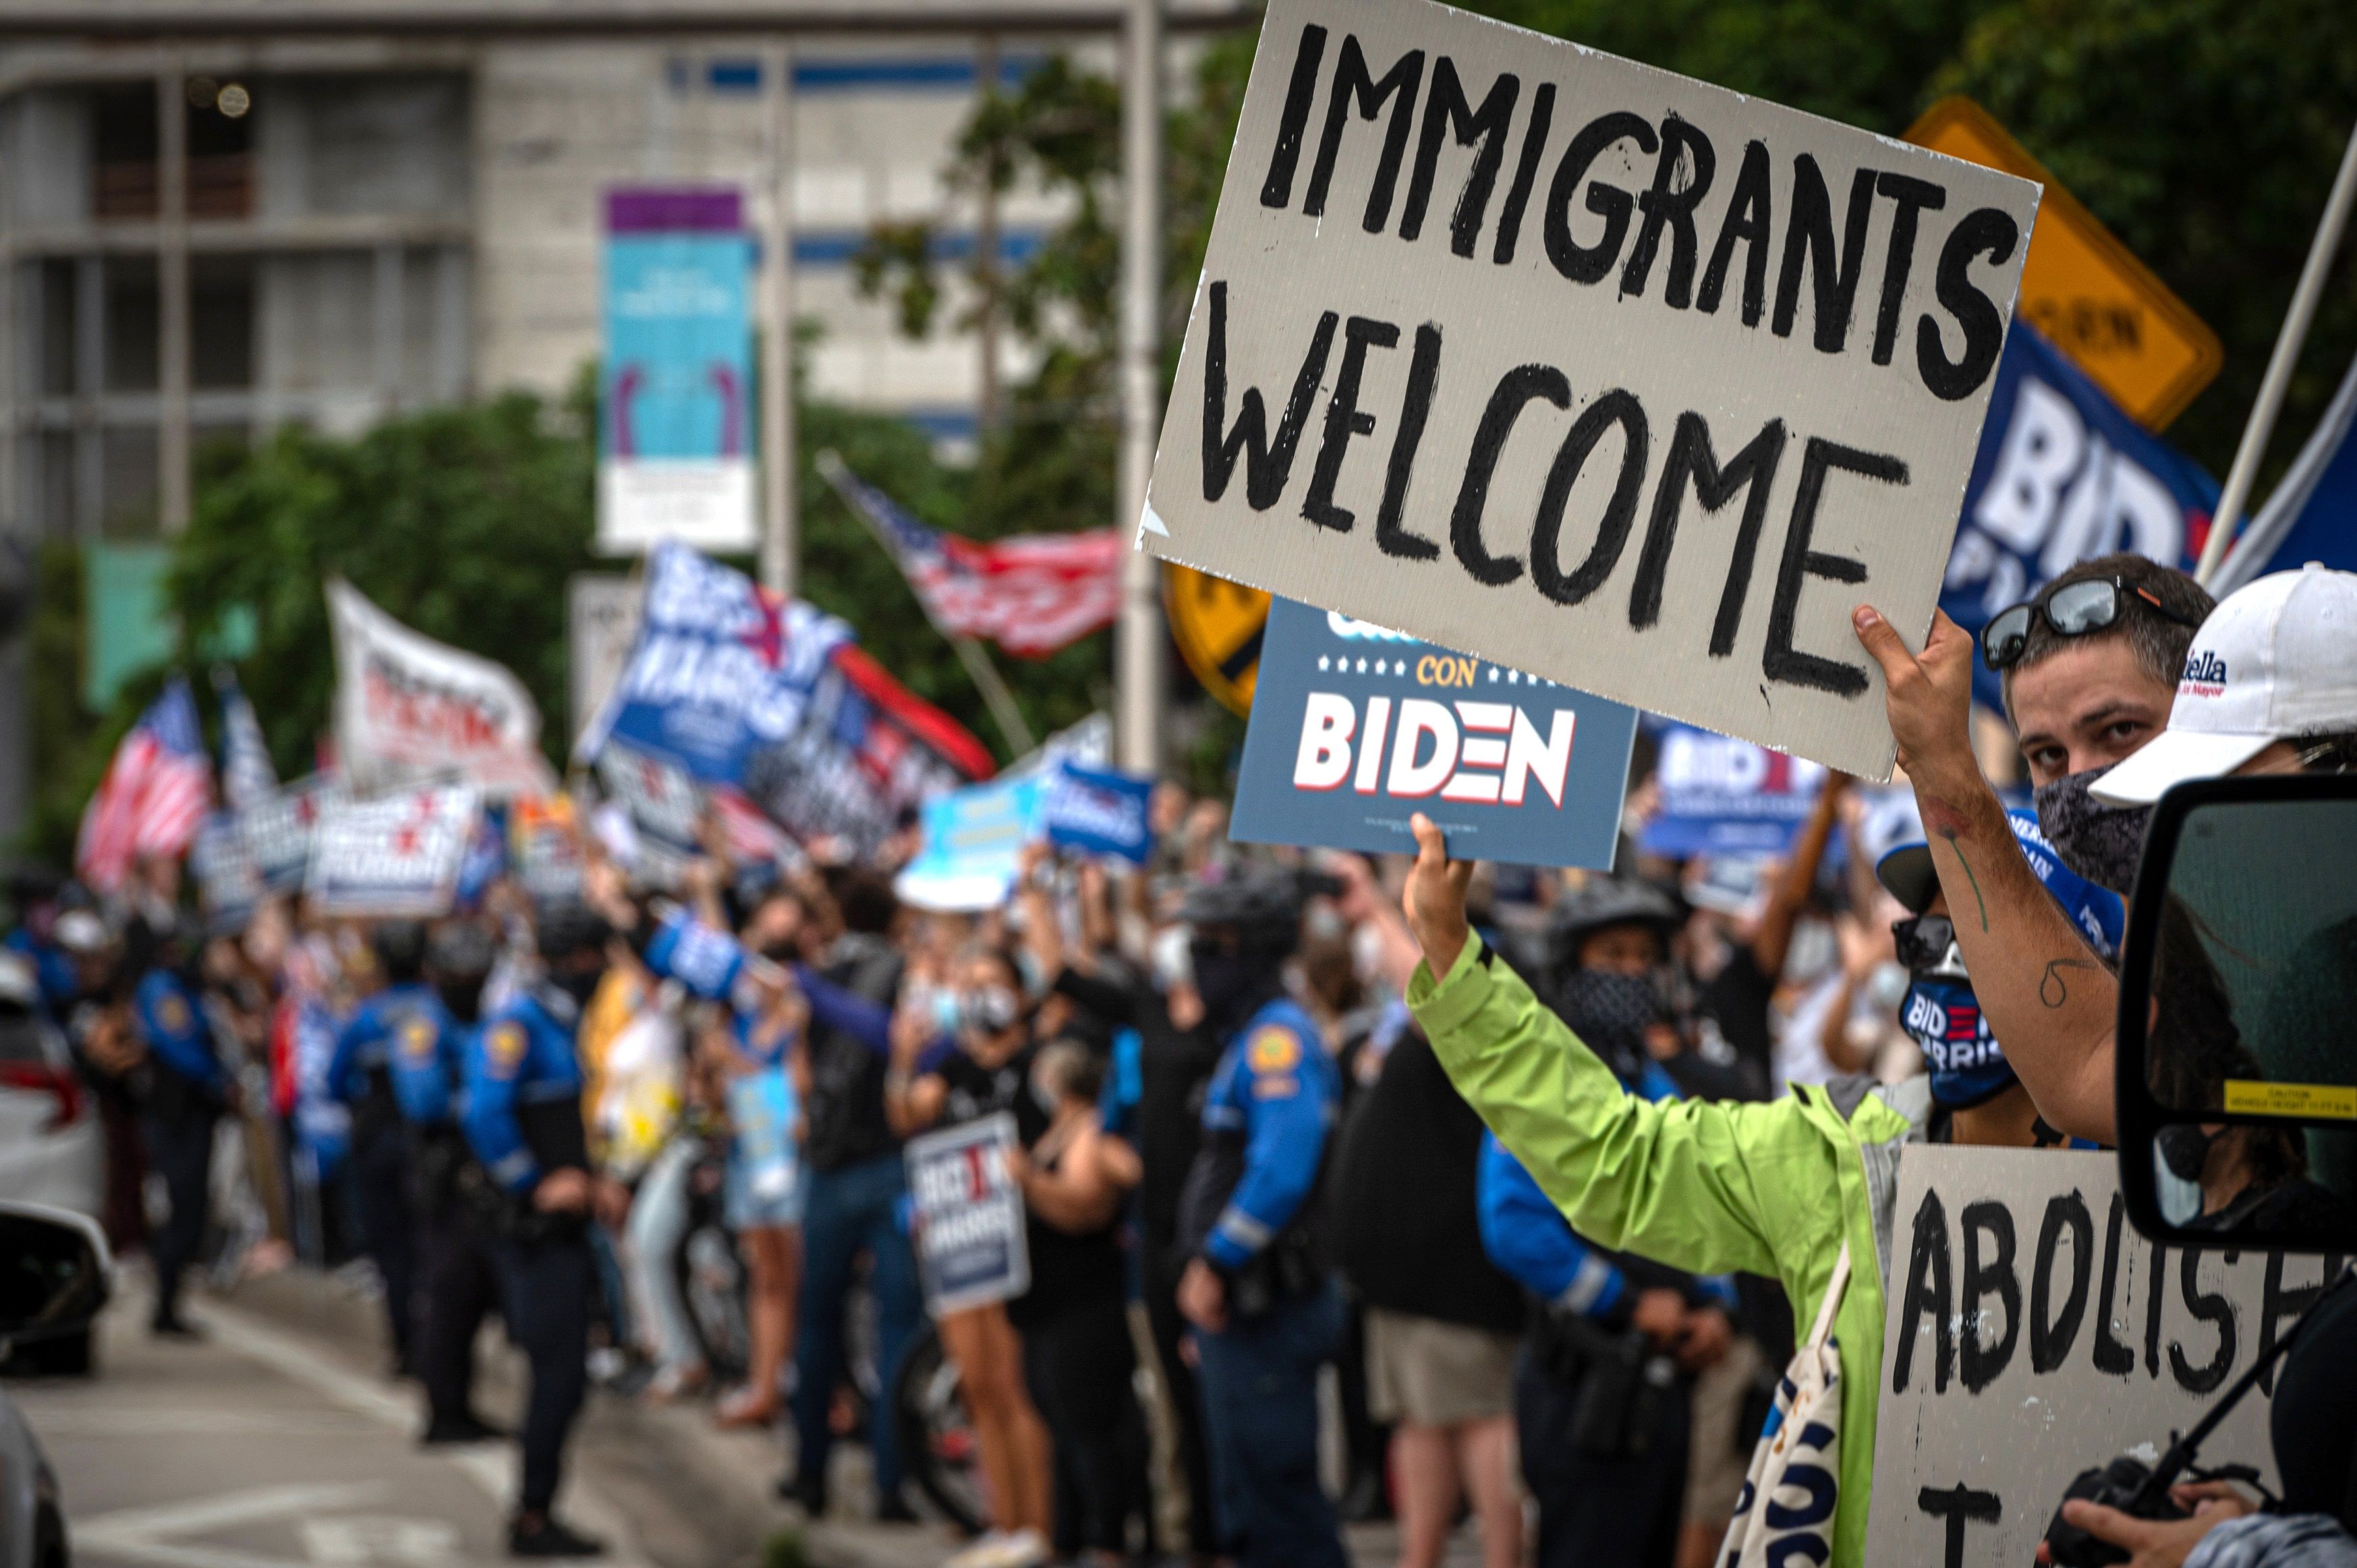 Gran parte de la sociedad estadounidense reconoce los aportes de la migración. (Foto Prensa Libre: Hemeroteca PL)